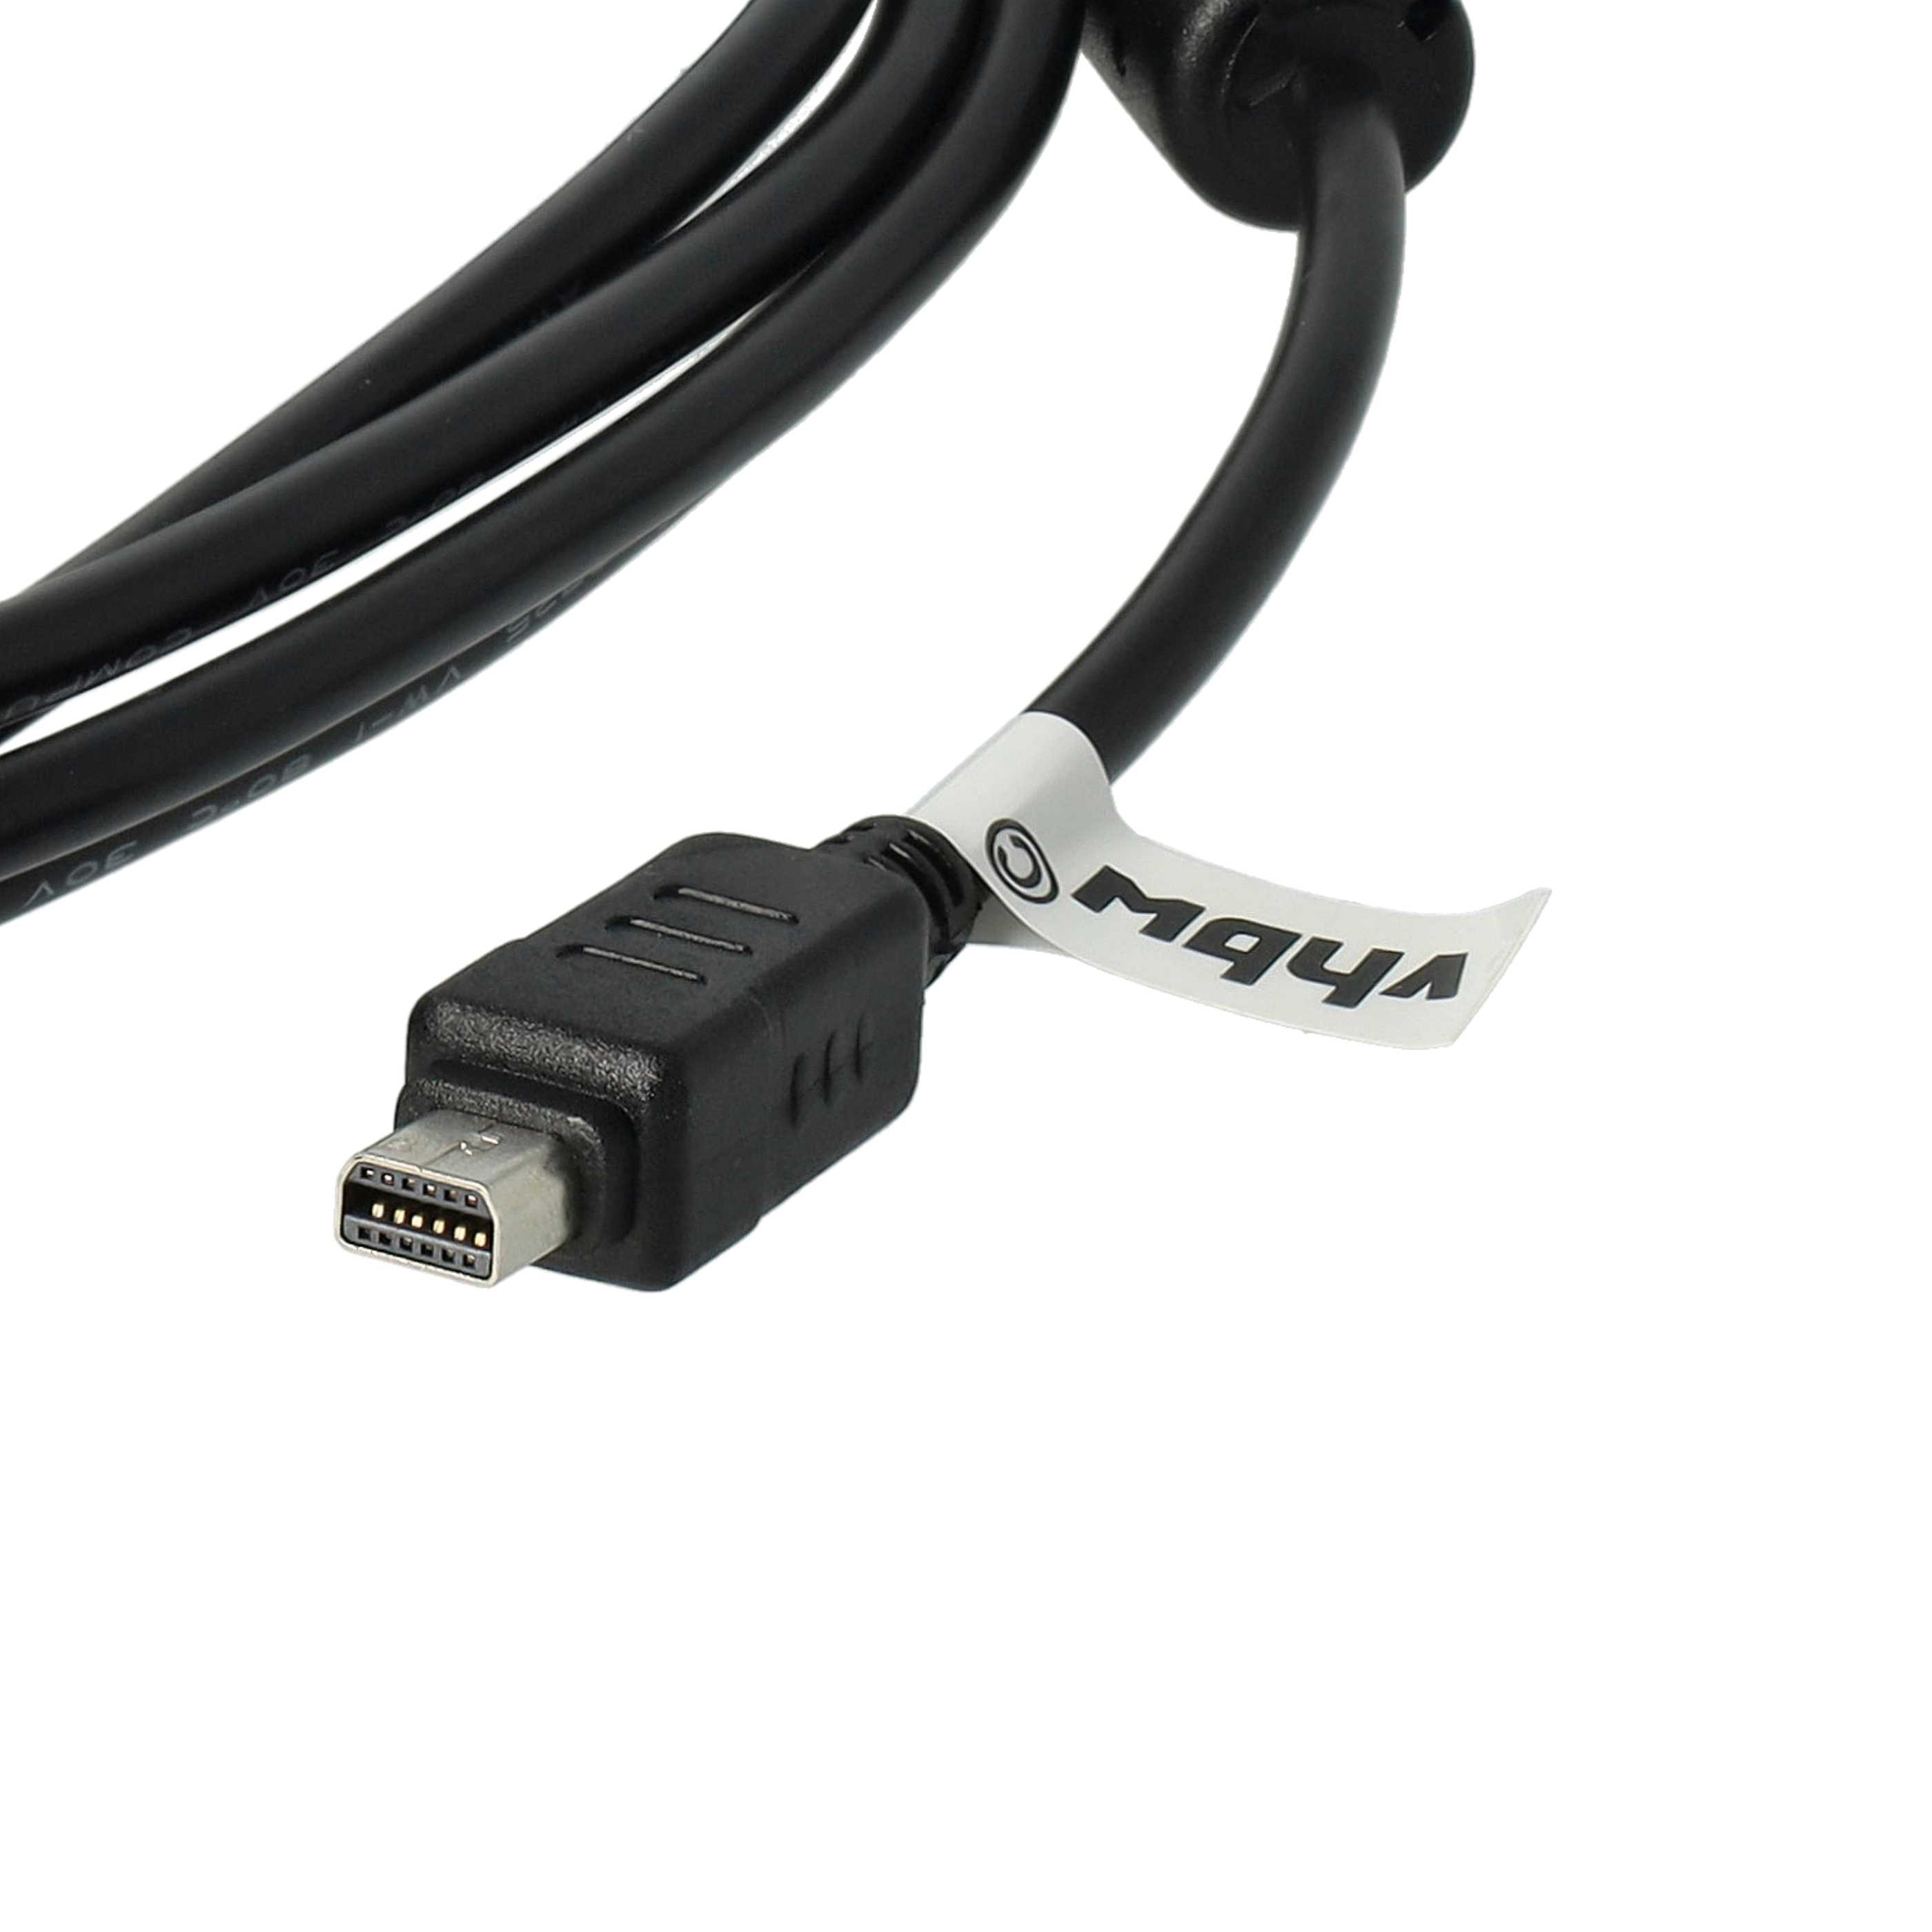 USB Data Cable replaces Olympus CB-USB6, CB-USB5, CB-USB8 for Olympus Camera - 150 cm